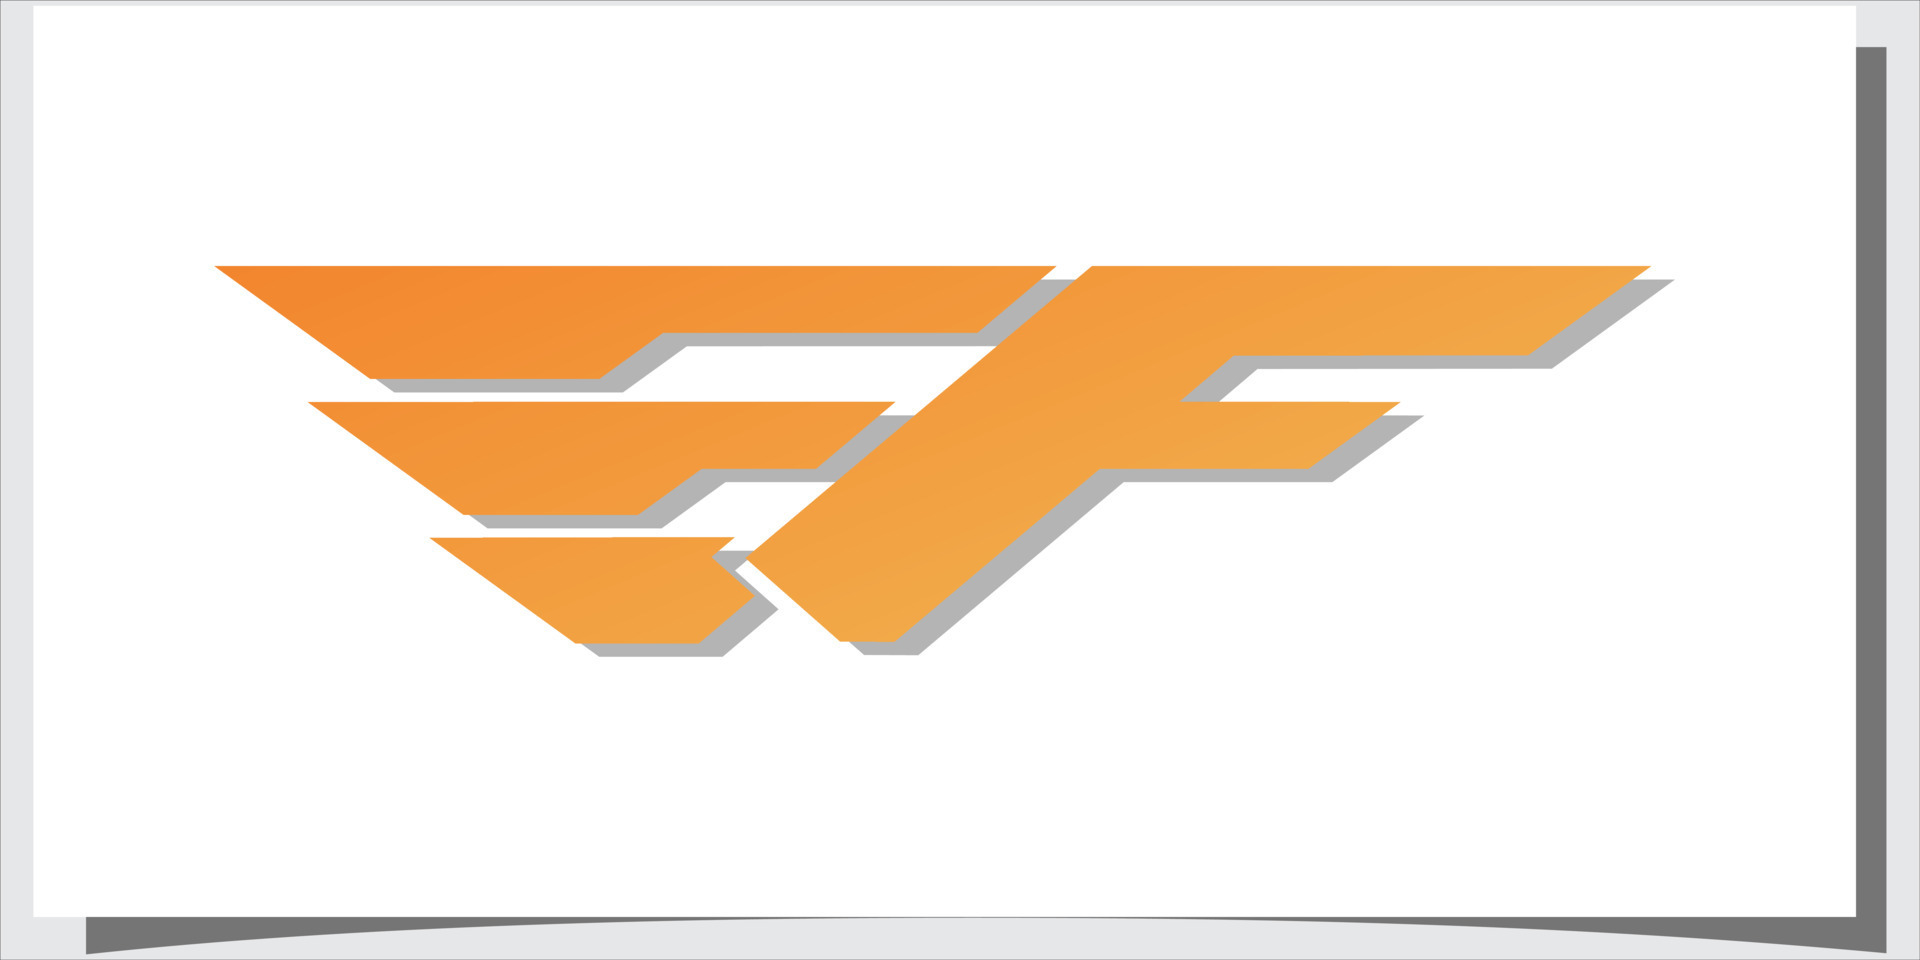 F letter logo with creative modern syle Premium Vector 13415112 Vector ...